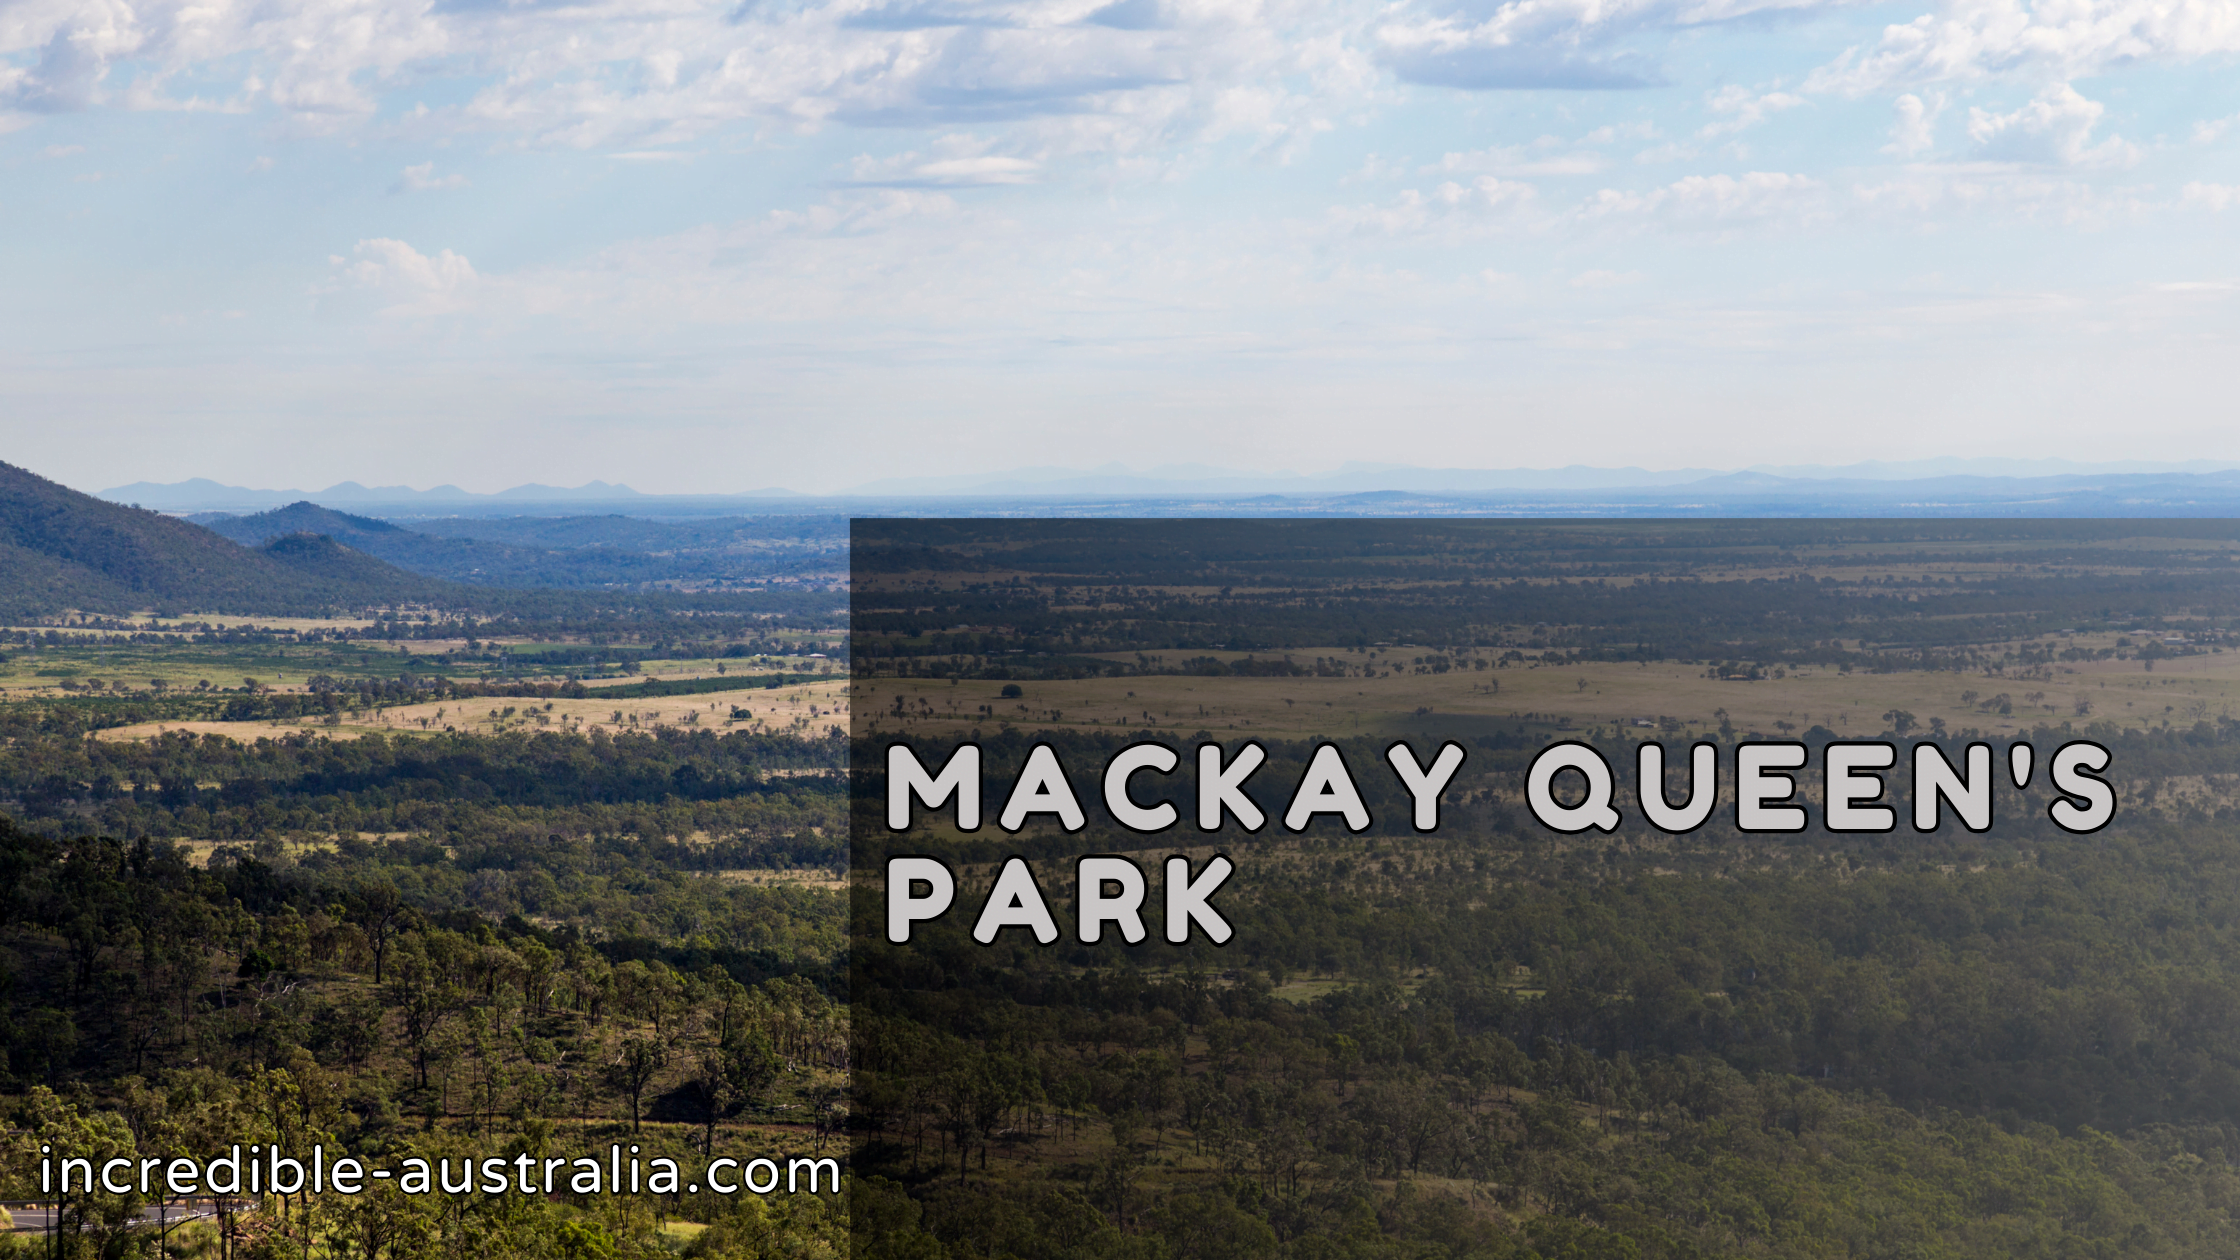 Mackay Queen's Park